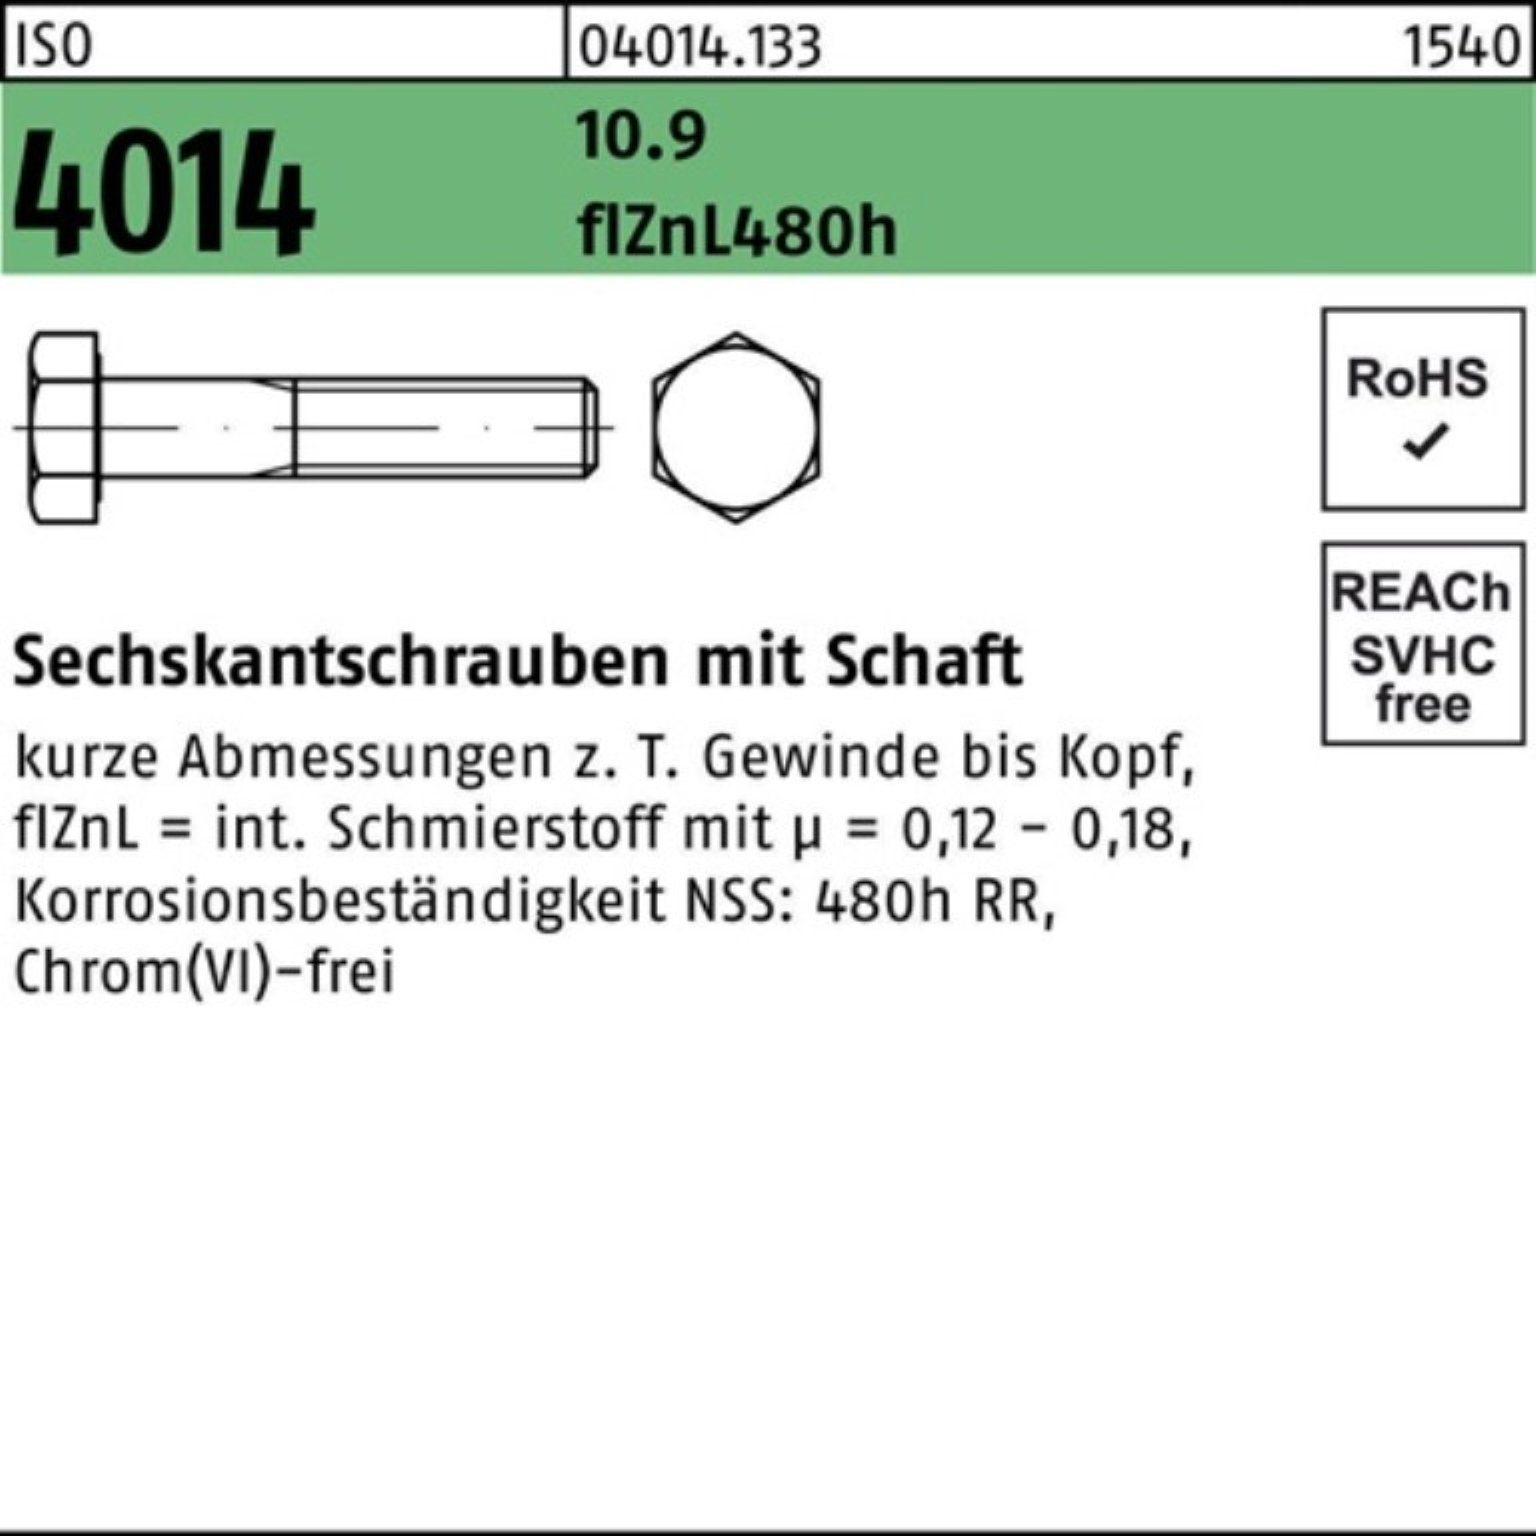 Bufab Sechskantschraube 150 10.9 Pack ISO Schaft 4014 zinklamelle M12x Sechskantschraube 100er